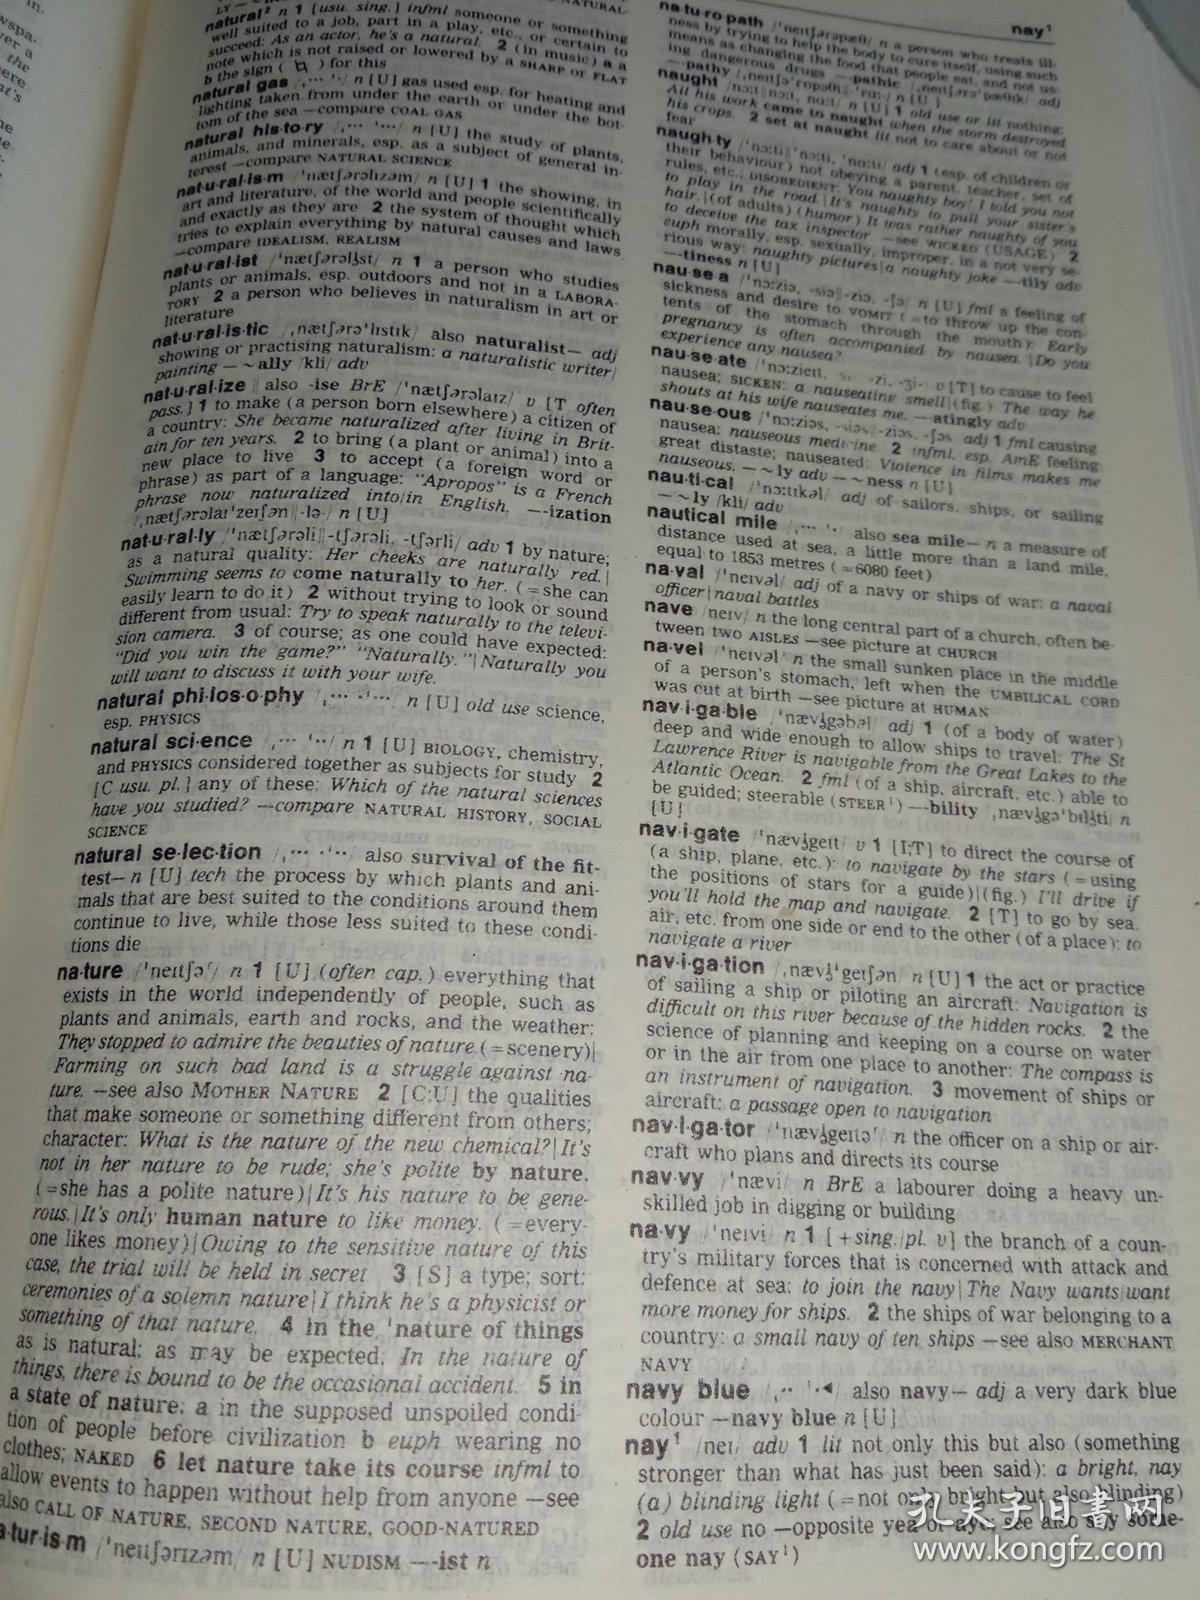 朗文当代英语词典 最新修订版。